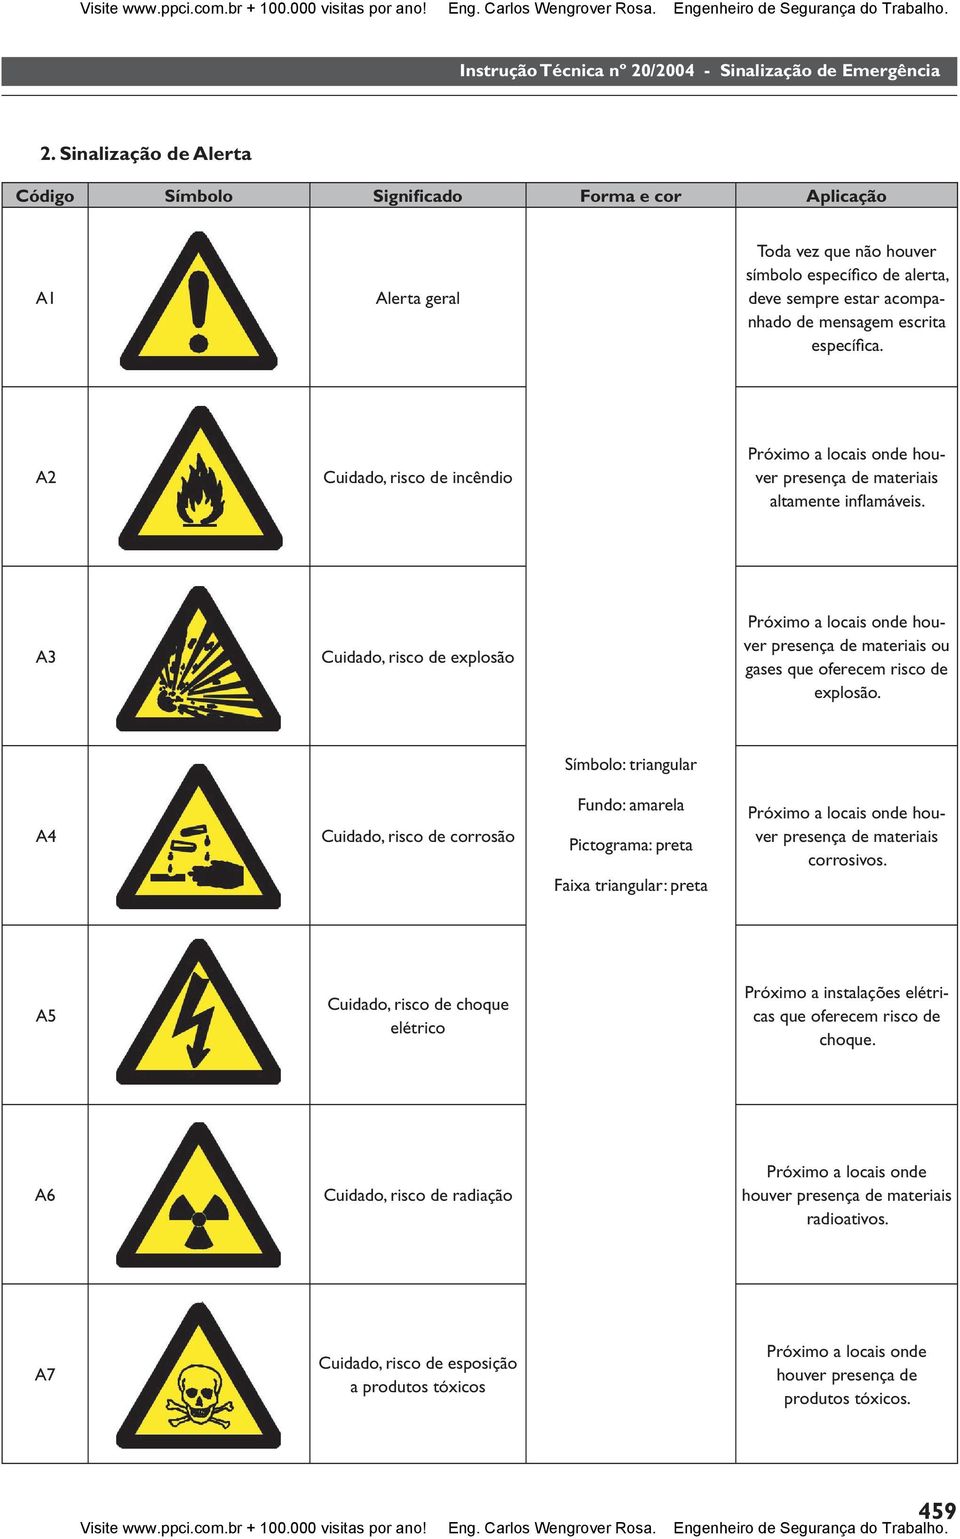 A3 Cuidado, risco de explosão Próximo a locais onde houver presença de materiais ou gases que oferecem risco de explosão.